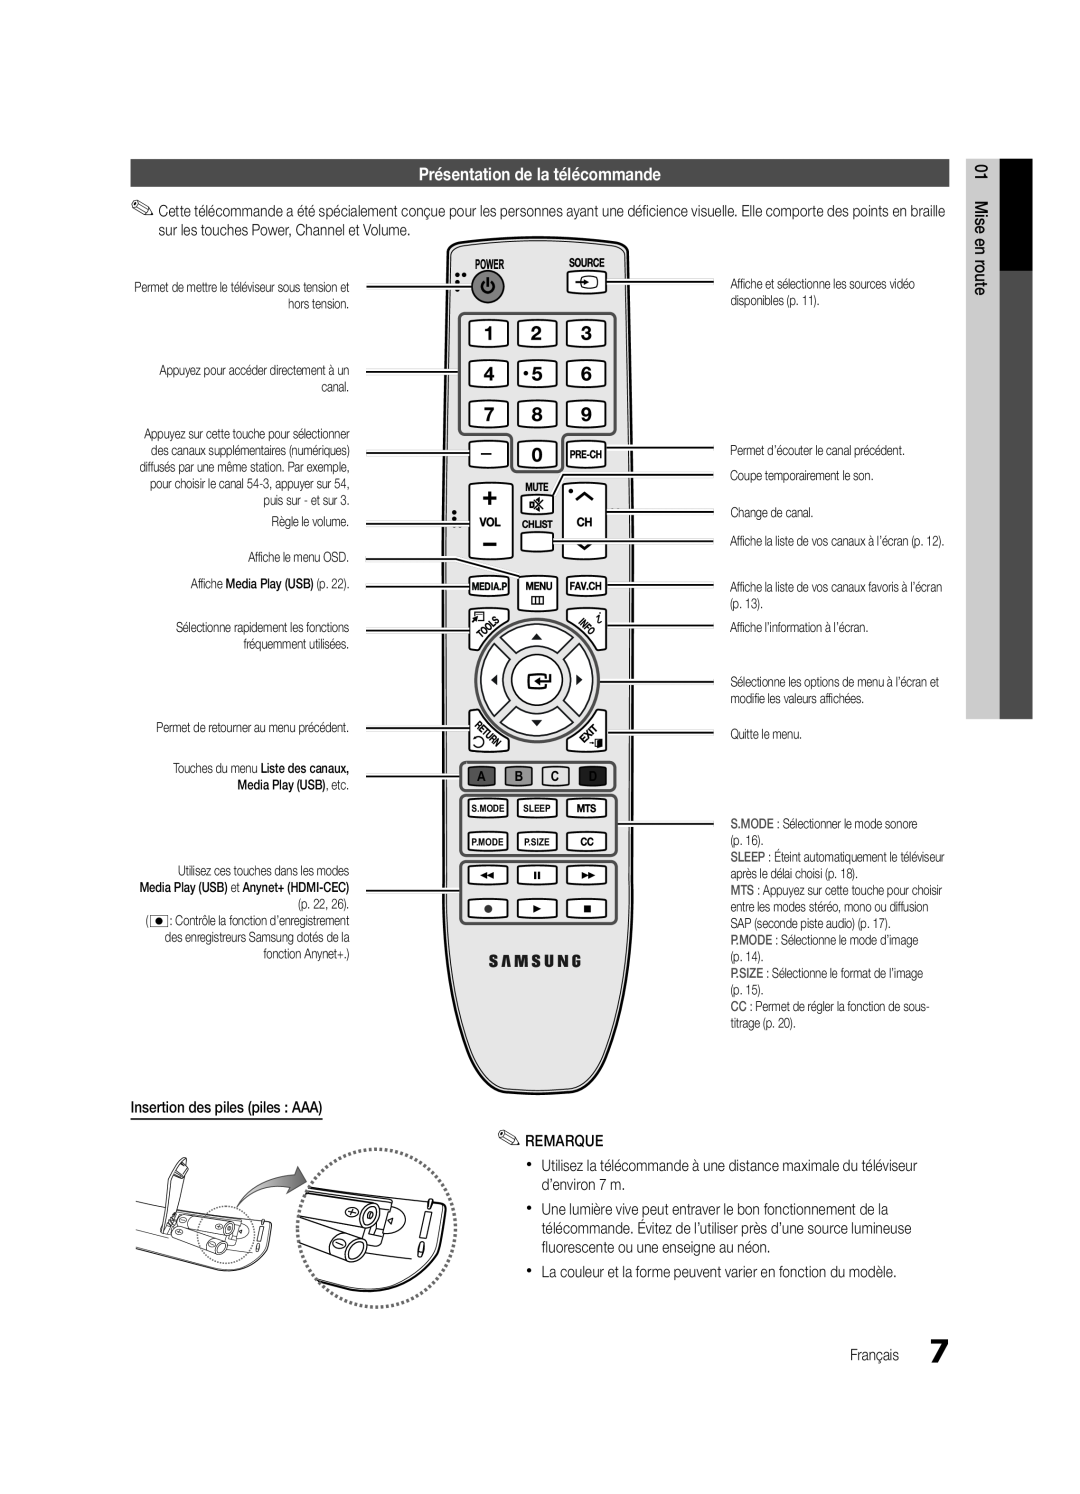 Samsung PC430-ZC, BN68-02576B-06 user manual Présentation de la télécommande, route, A B C D 